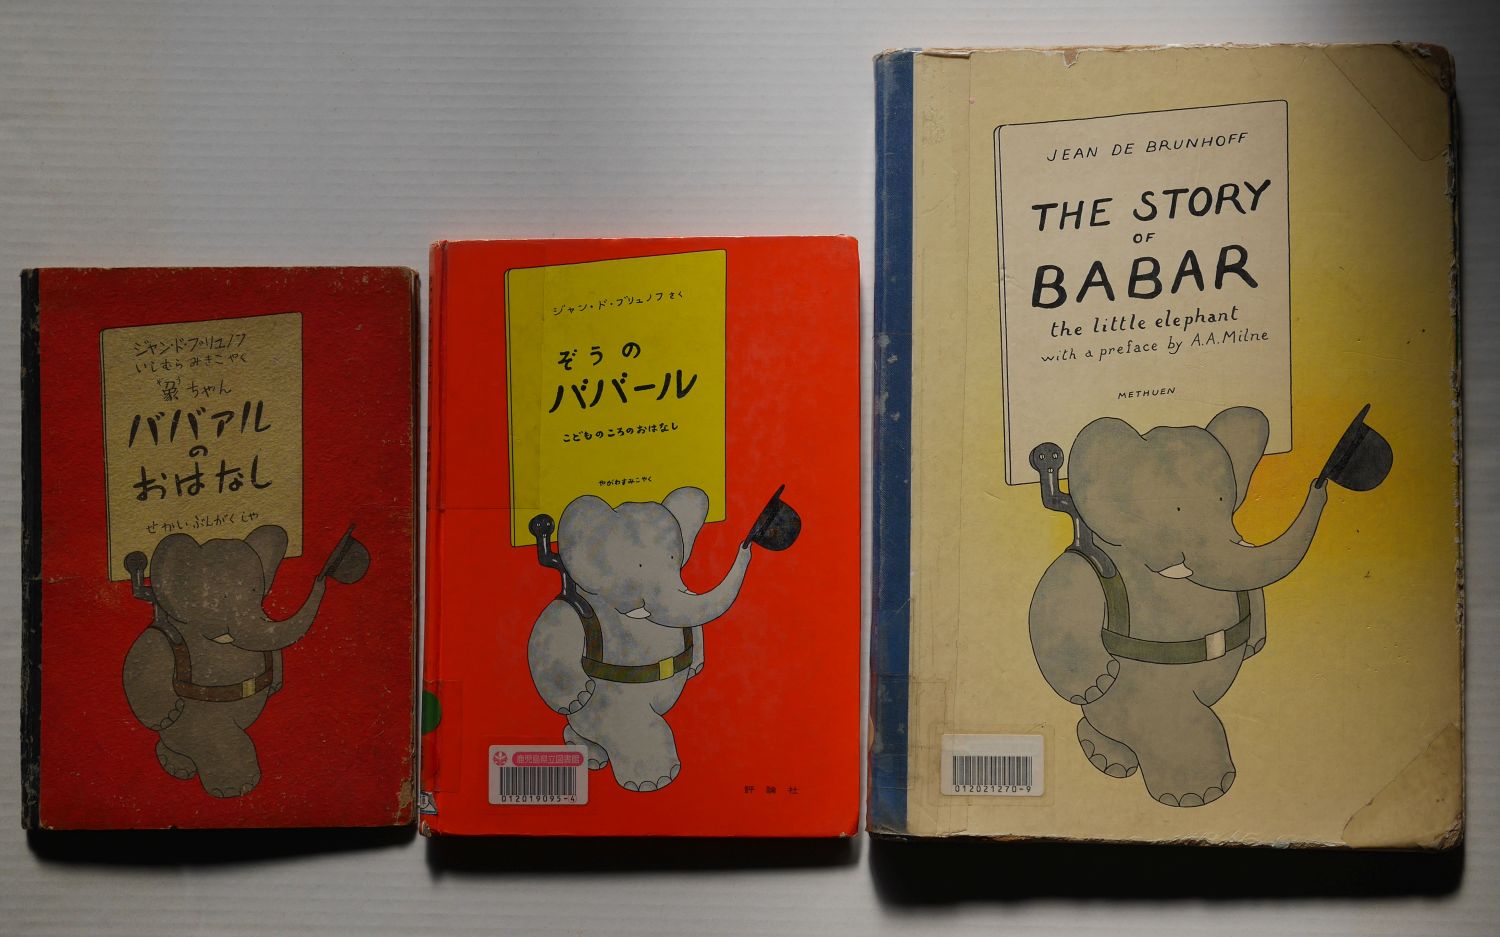 『象ちゃんババアルのおはなし』『ぞうのババール』『THE STORY OF BABAR』各版の大きさ